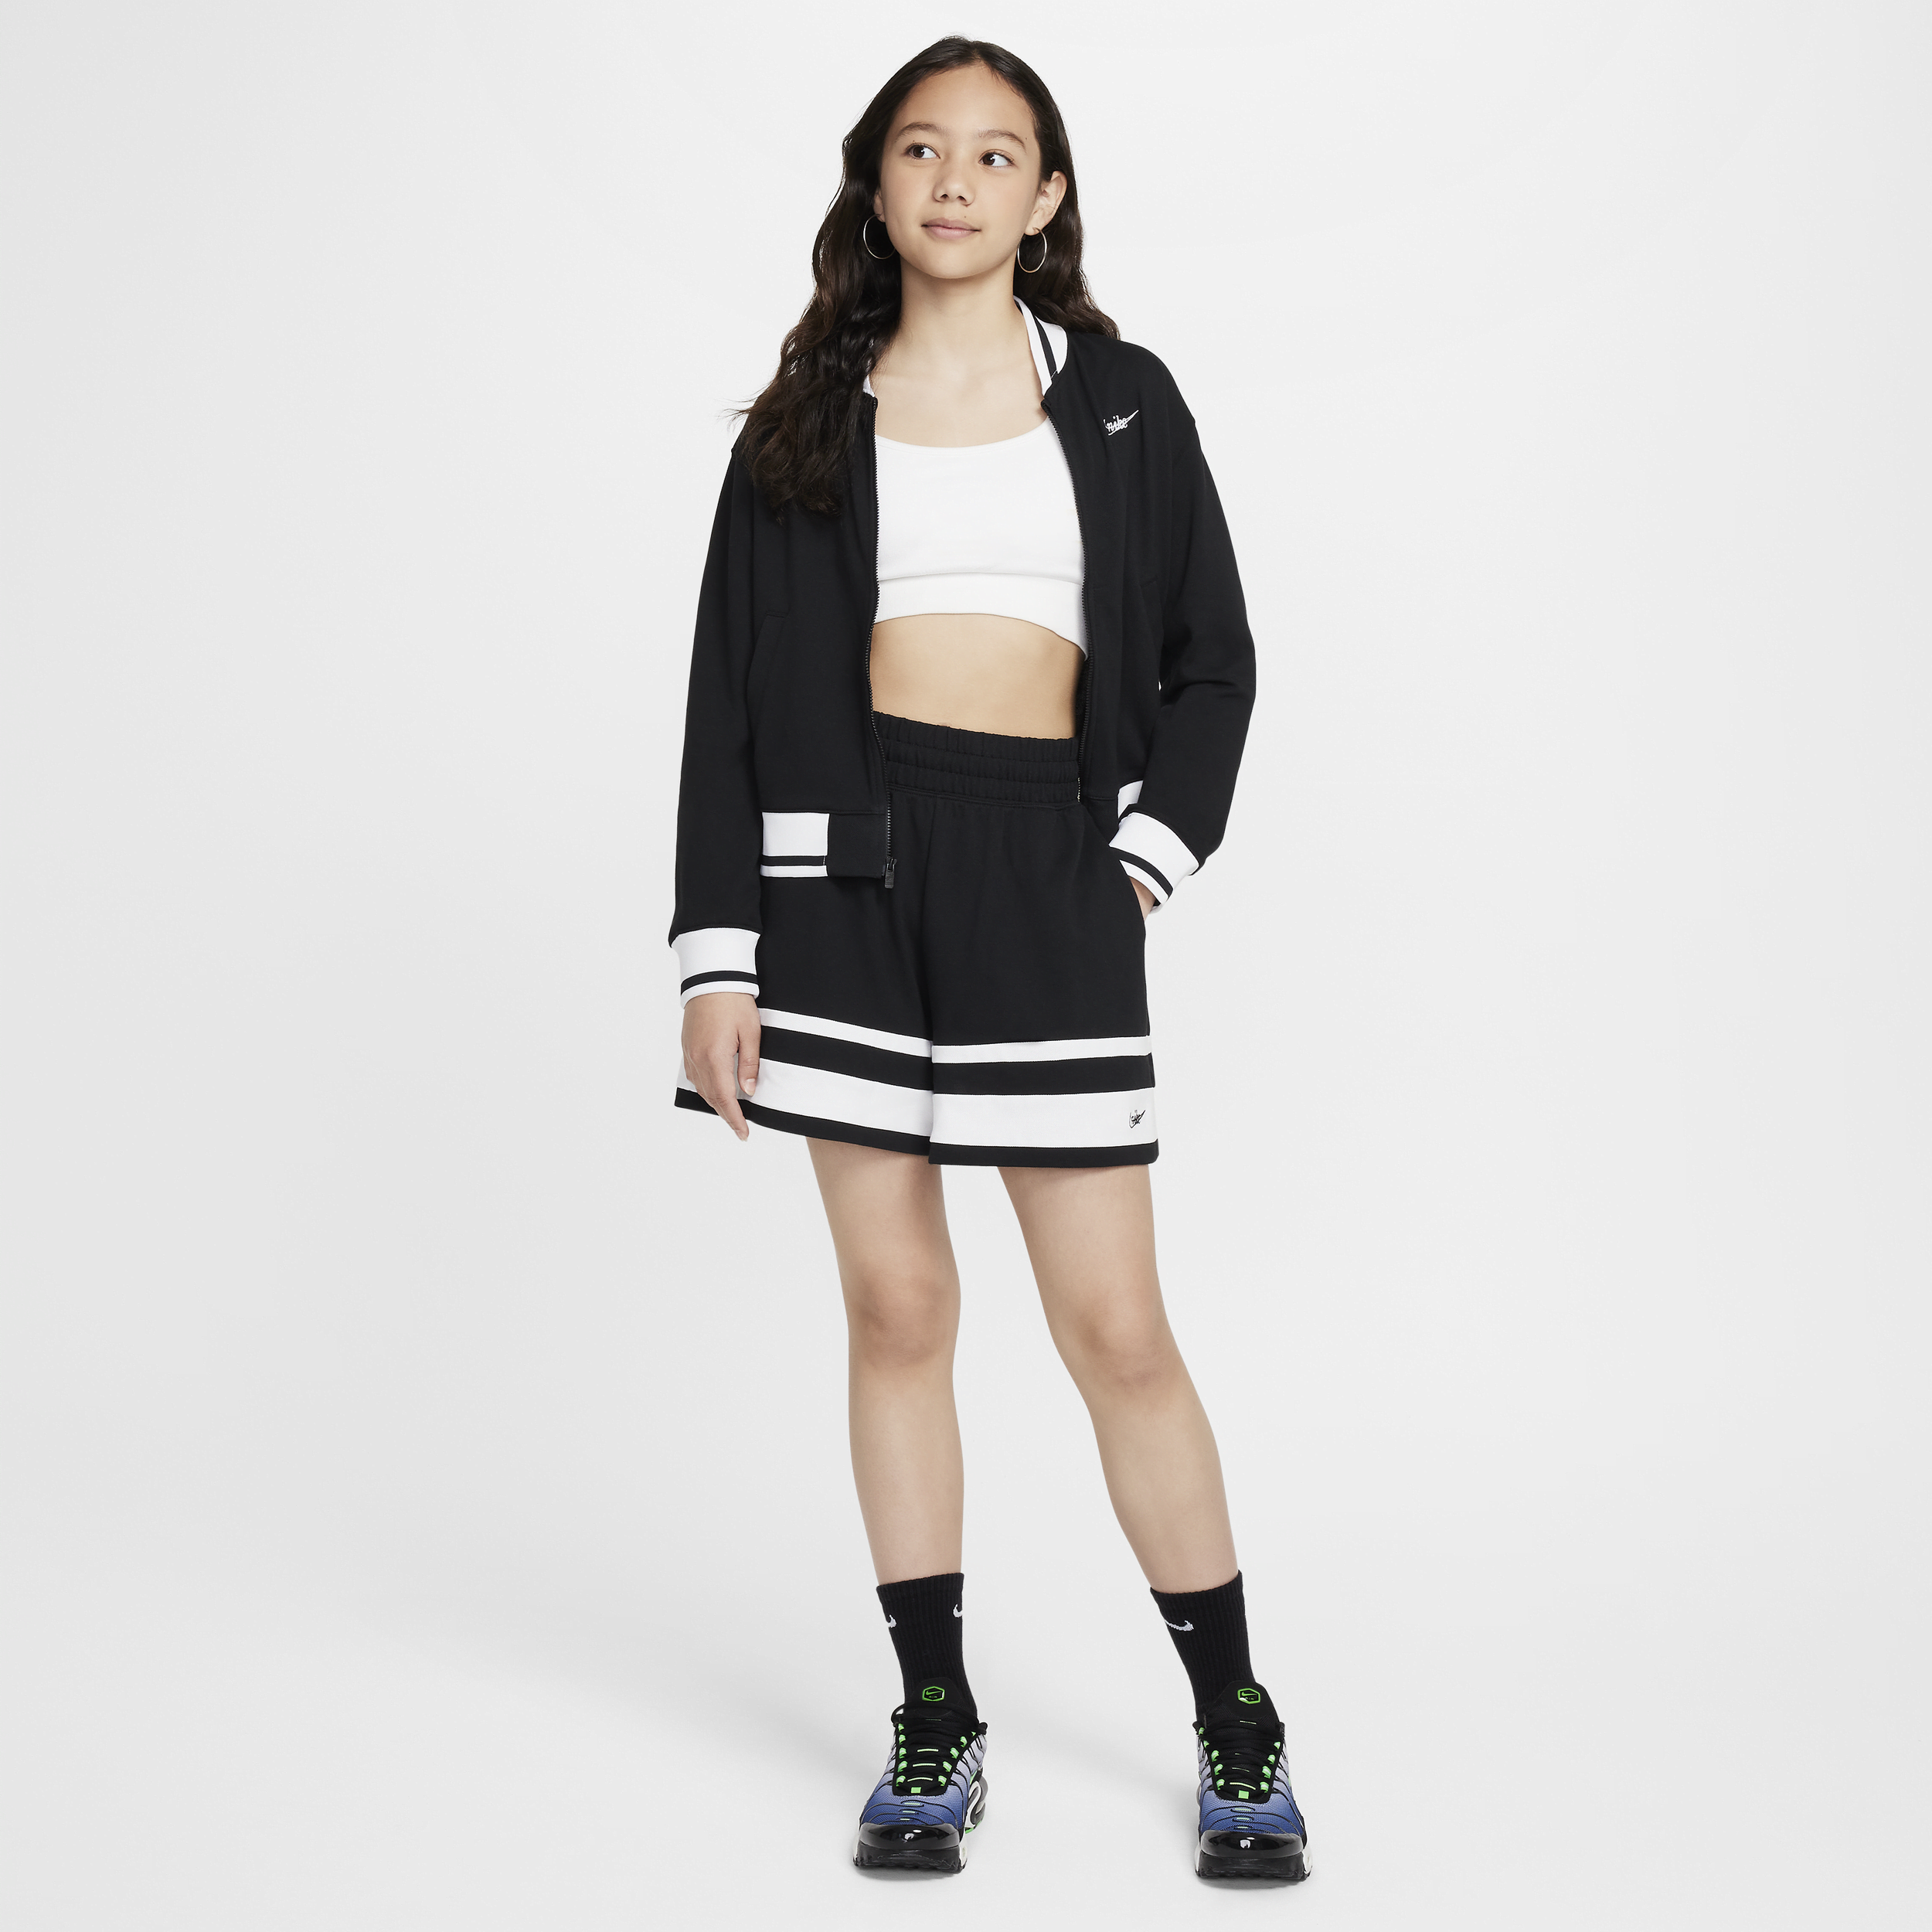 Nike Sportswear meisjesjack Zwart